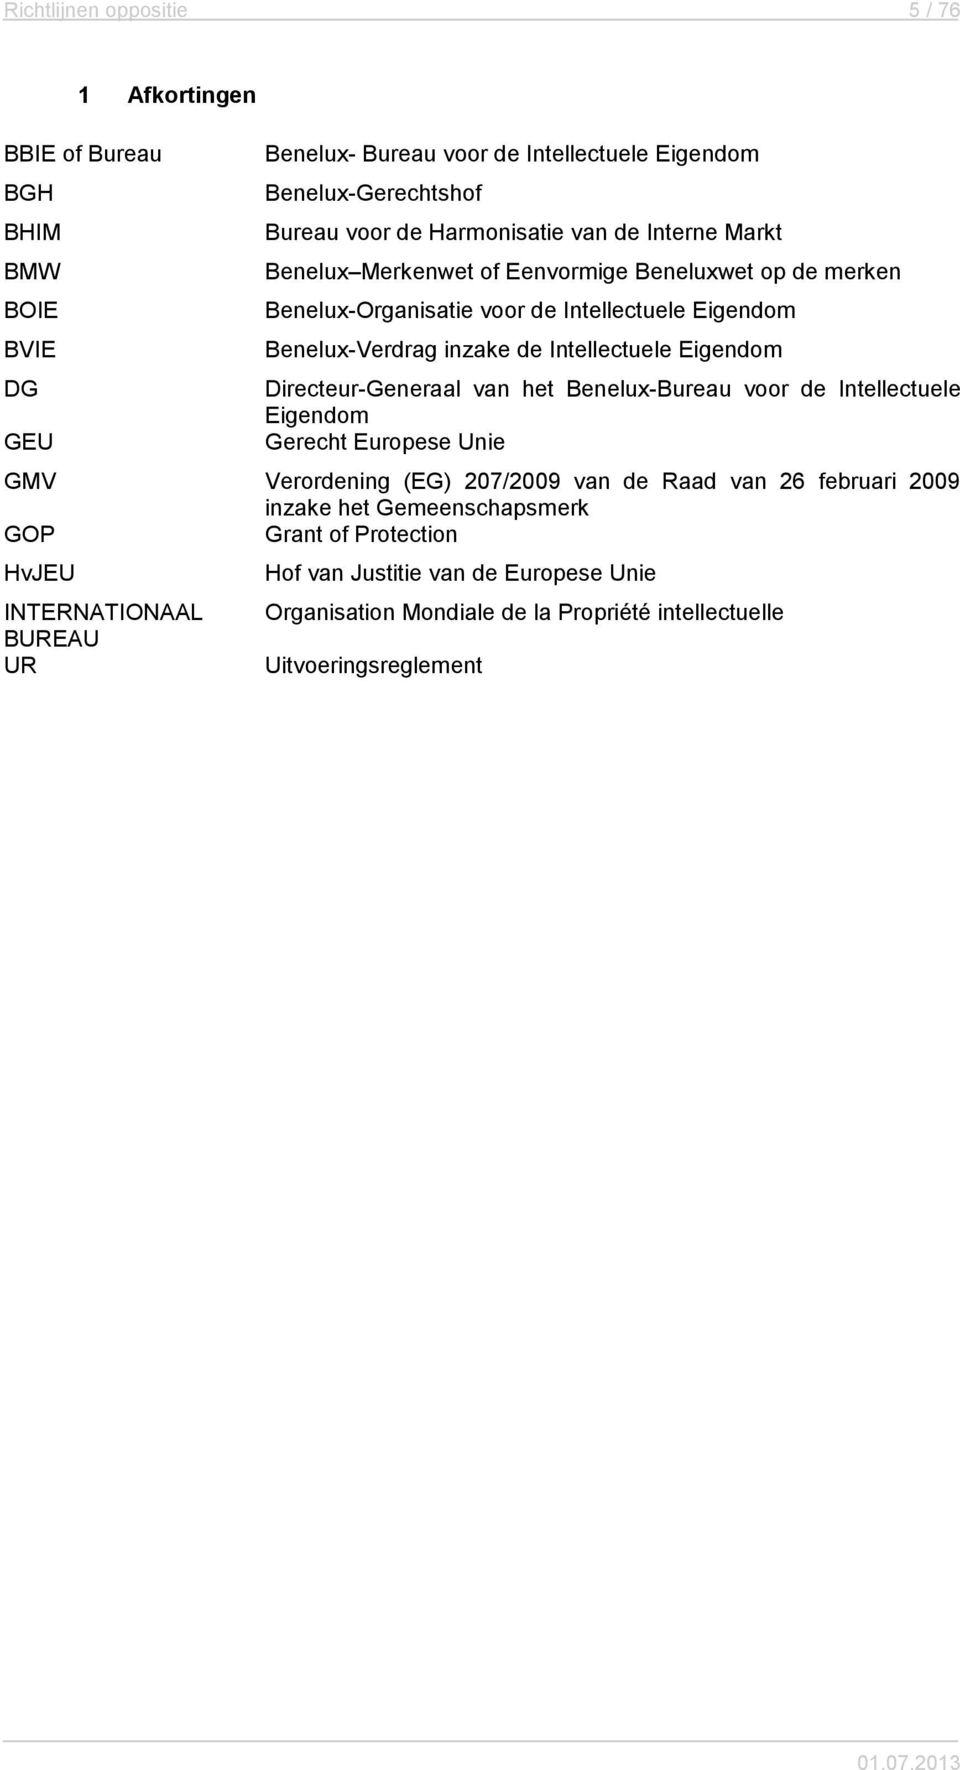 DG Directeur-Generaal van het Benelux-Bureau voor de Intellectuele Eigendom GEU Gerecht Europese Unie GMV Verordening (EG) 207/2009 van de Raad van 26 februari 2009 inzake het